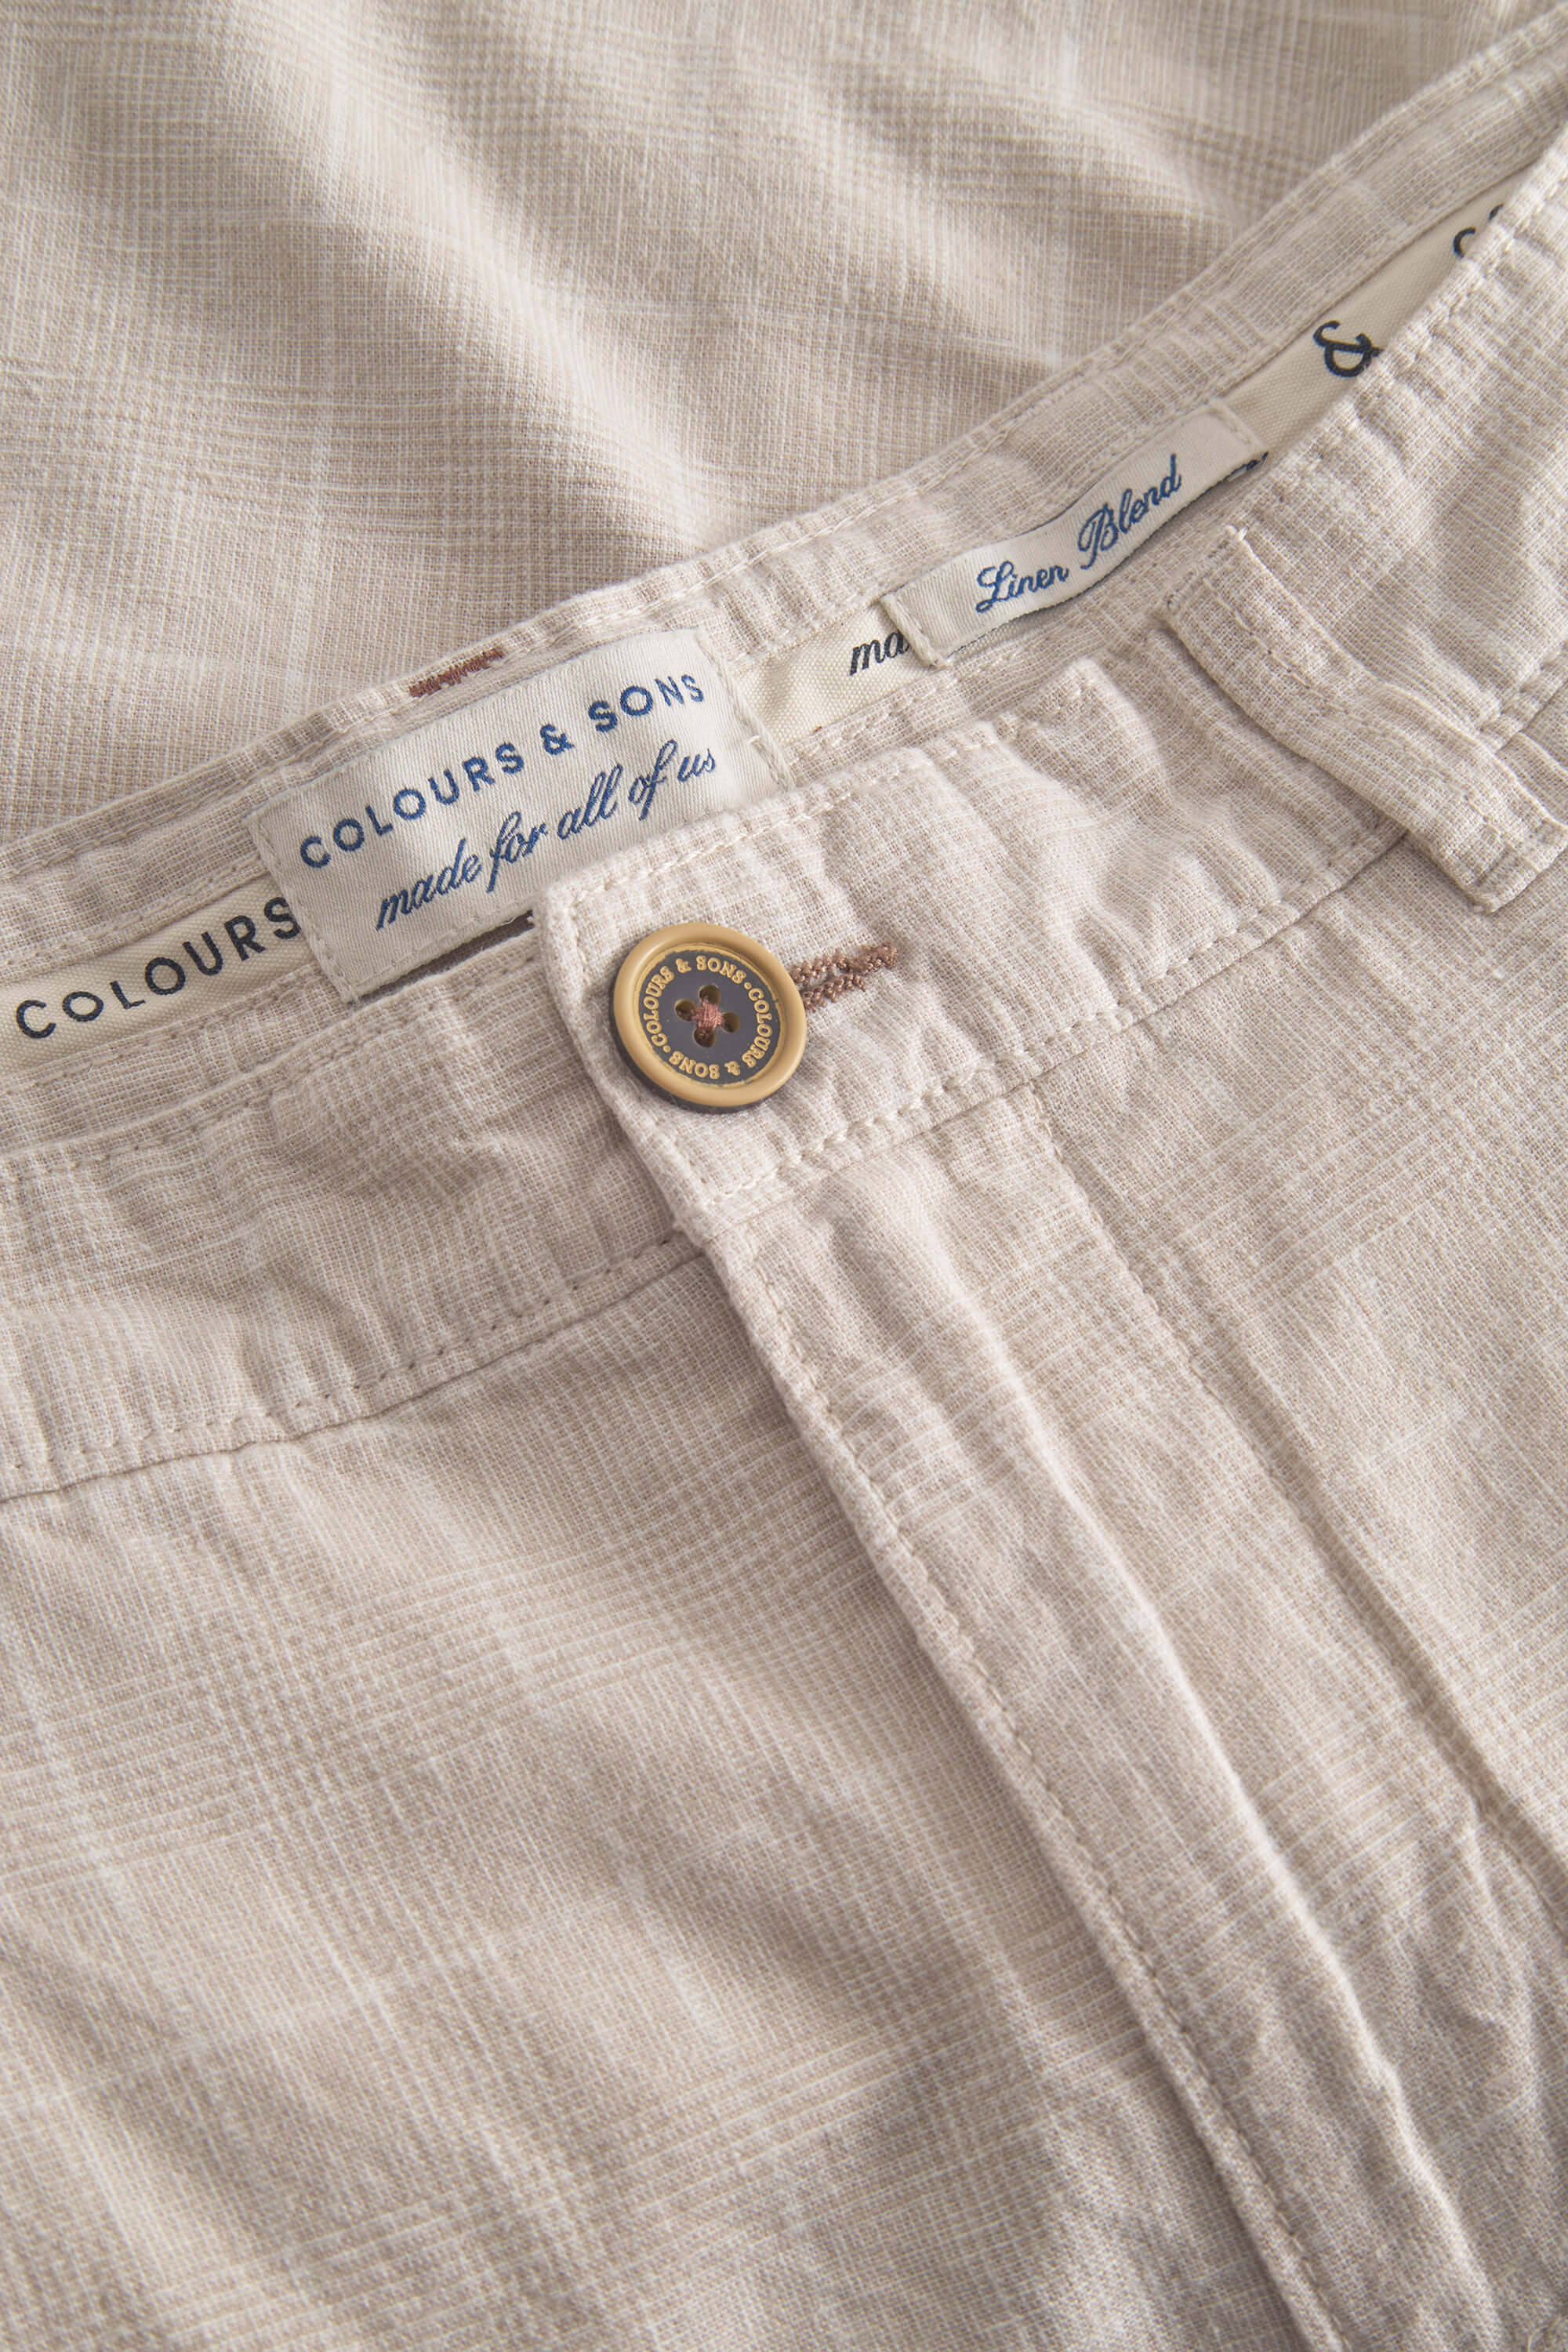 Herren Shorts, beige, 55% Leinen 45% Baumwolle von Colours & Sons